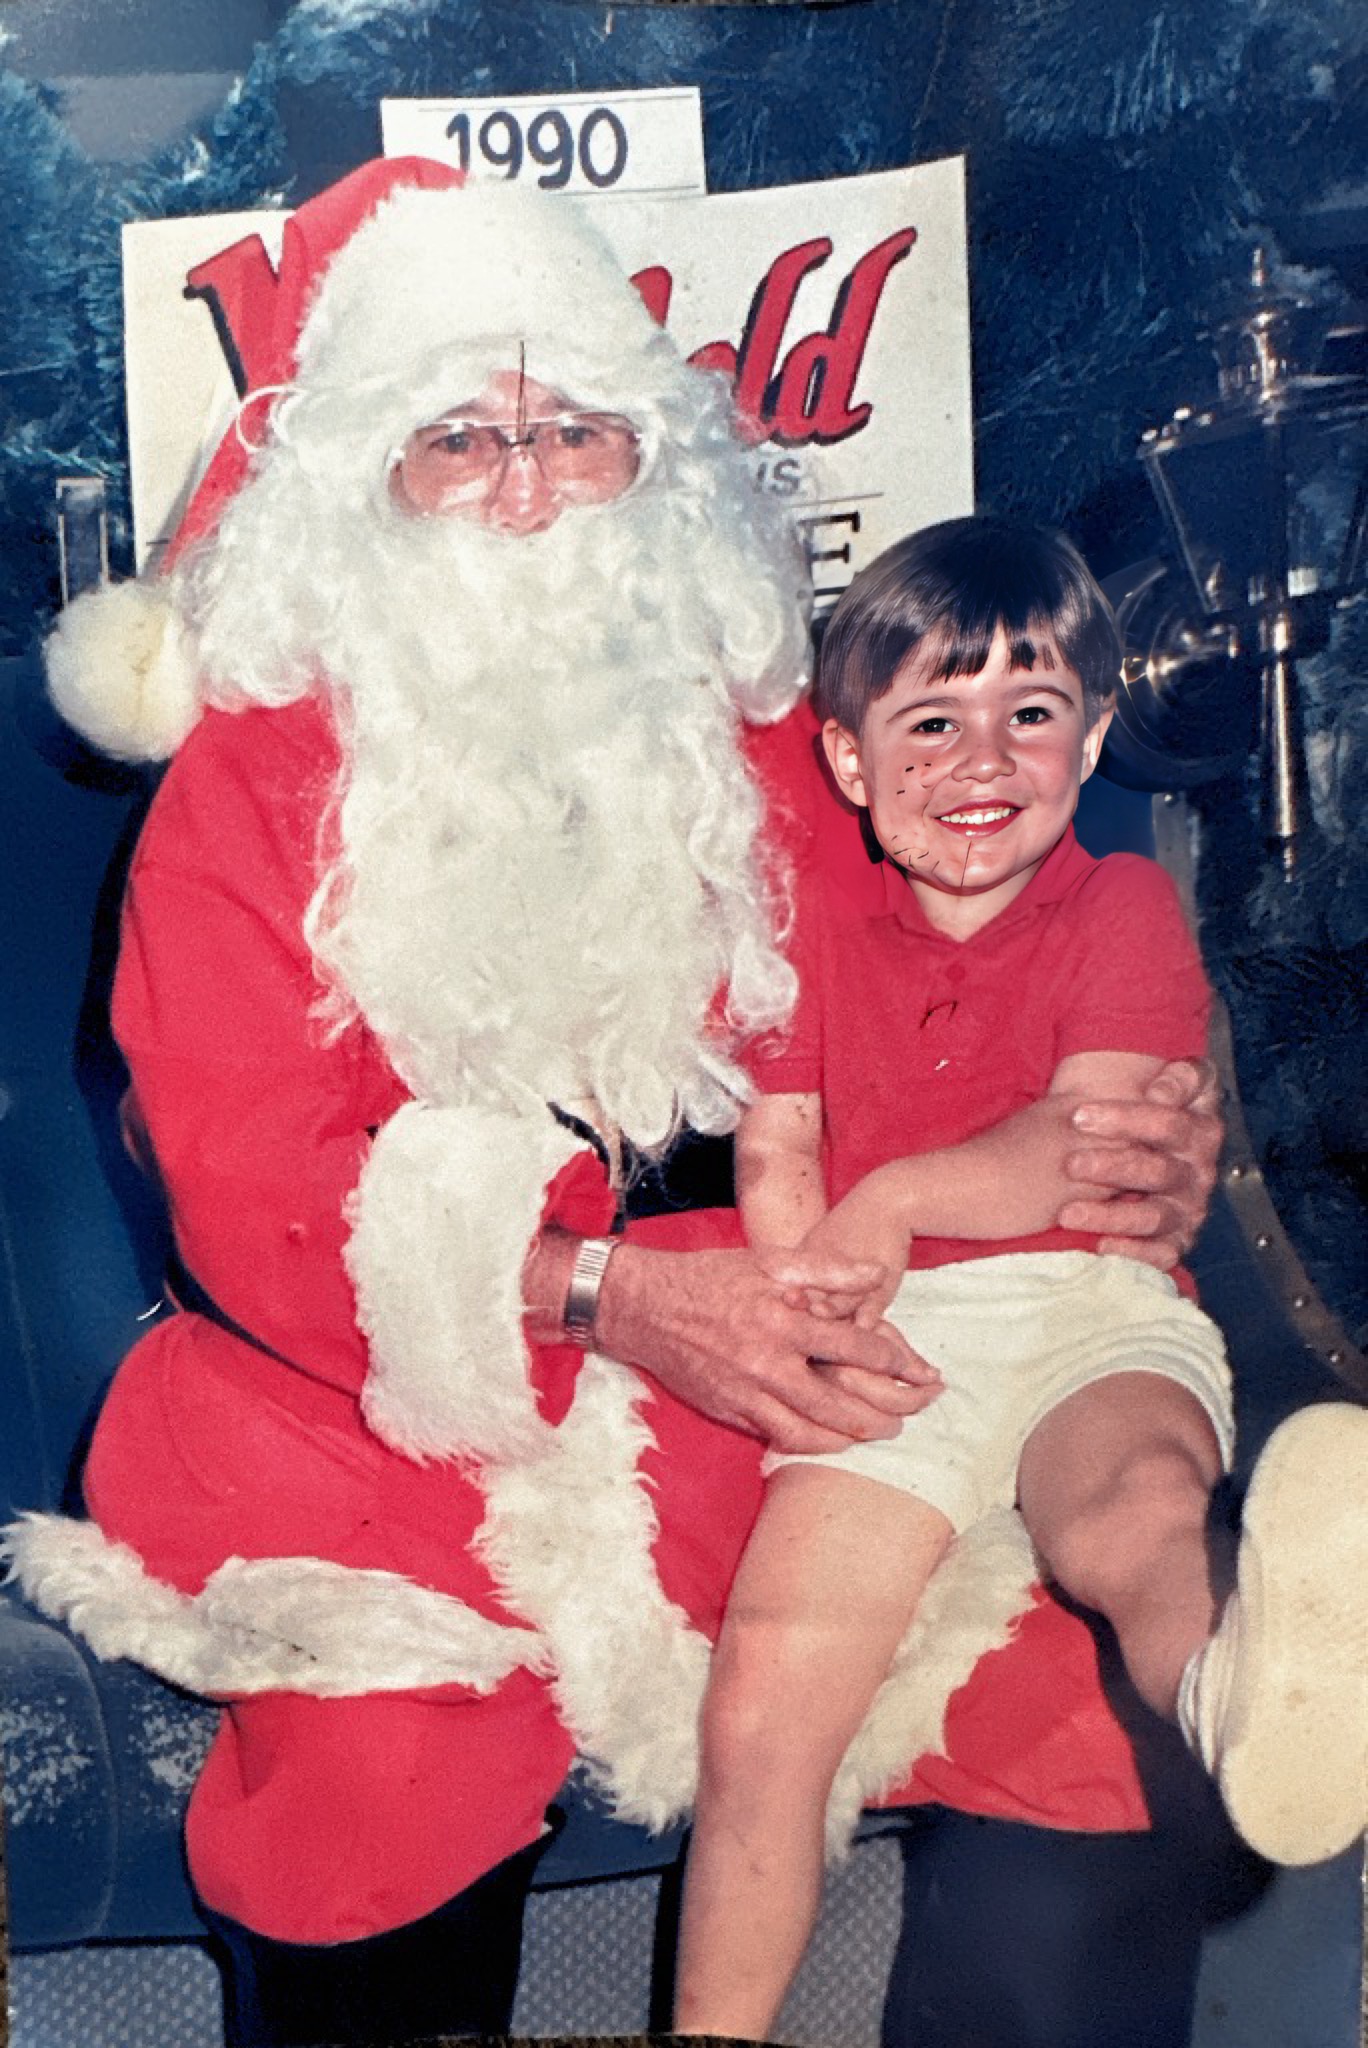 Chris Christmas 1990 aged 3